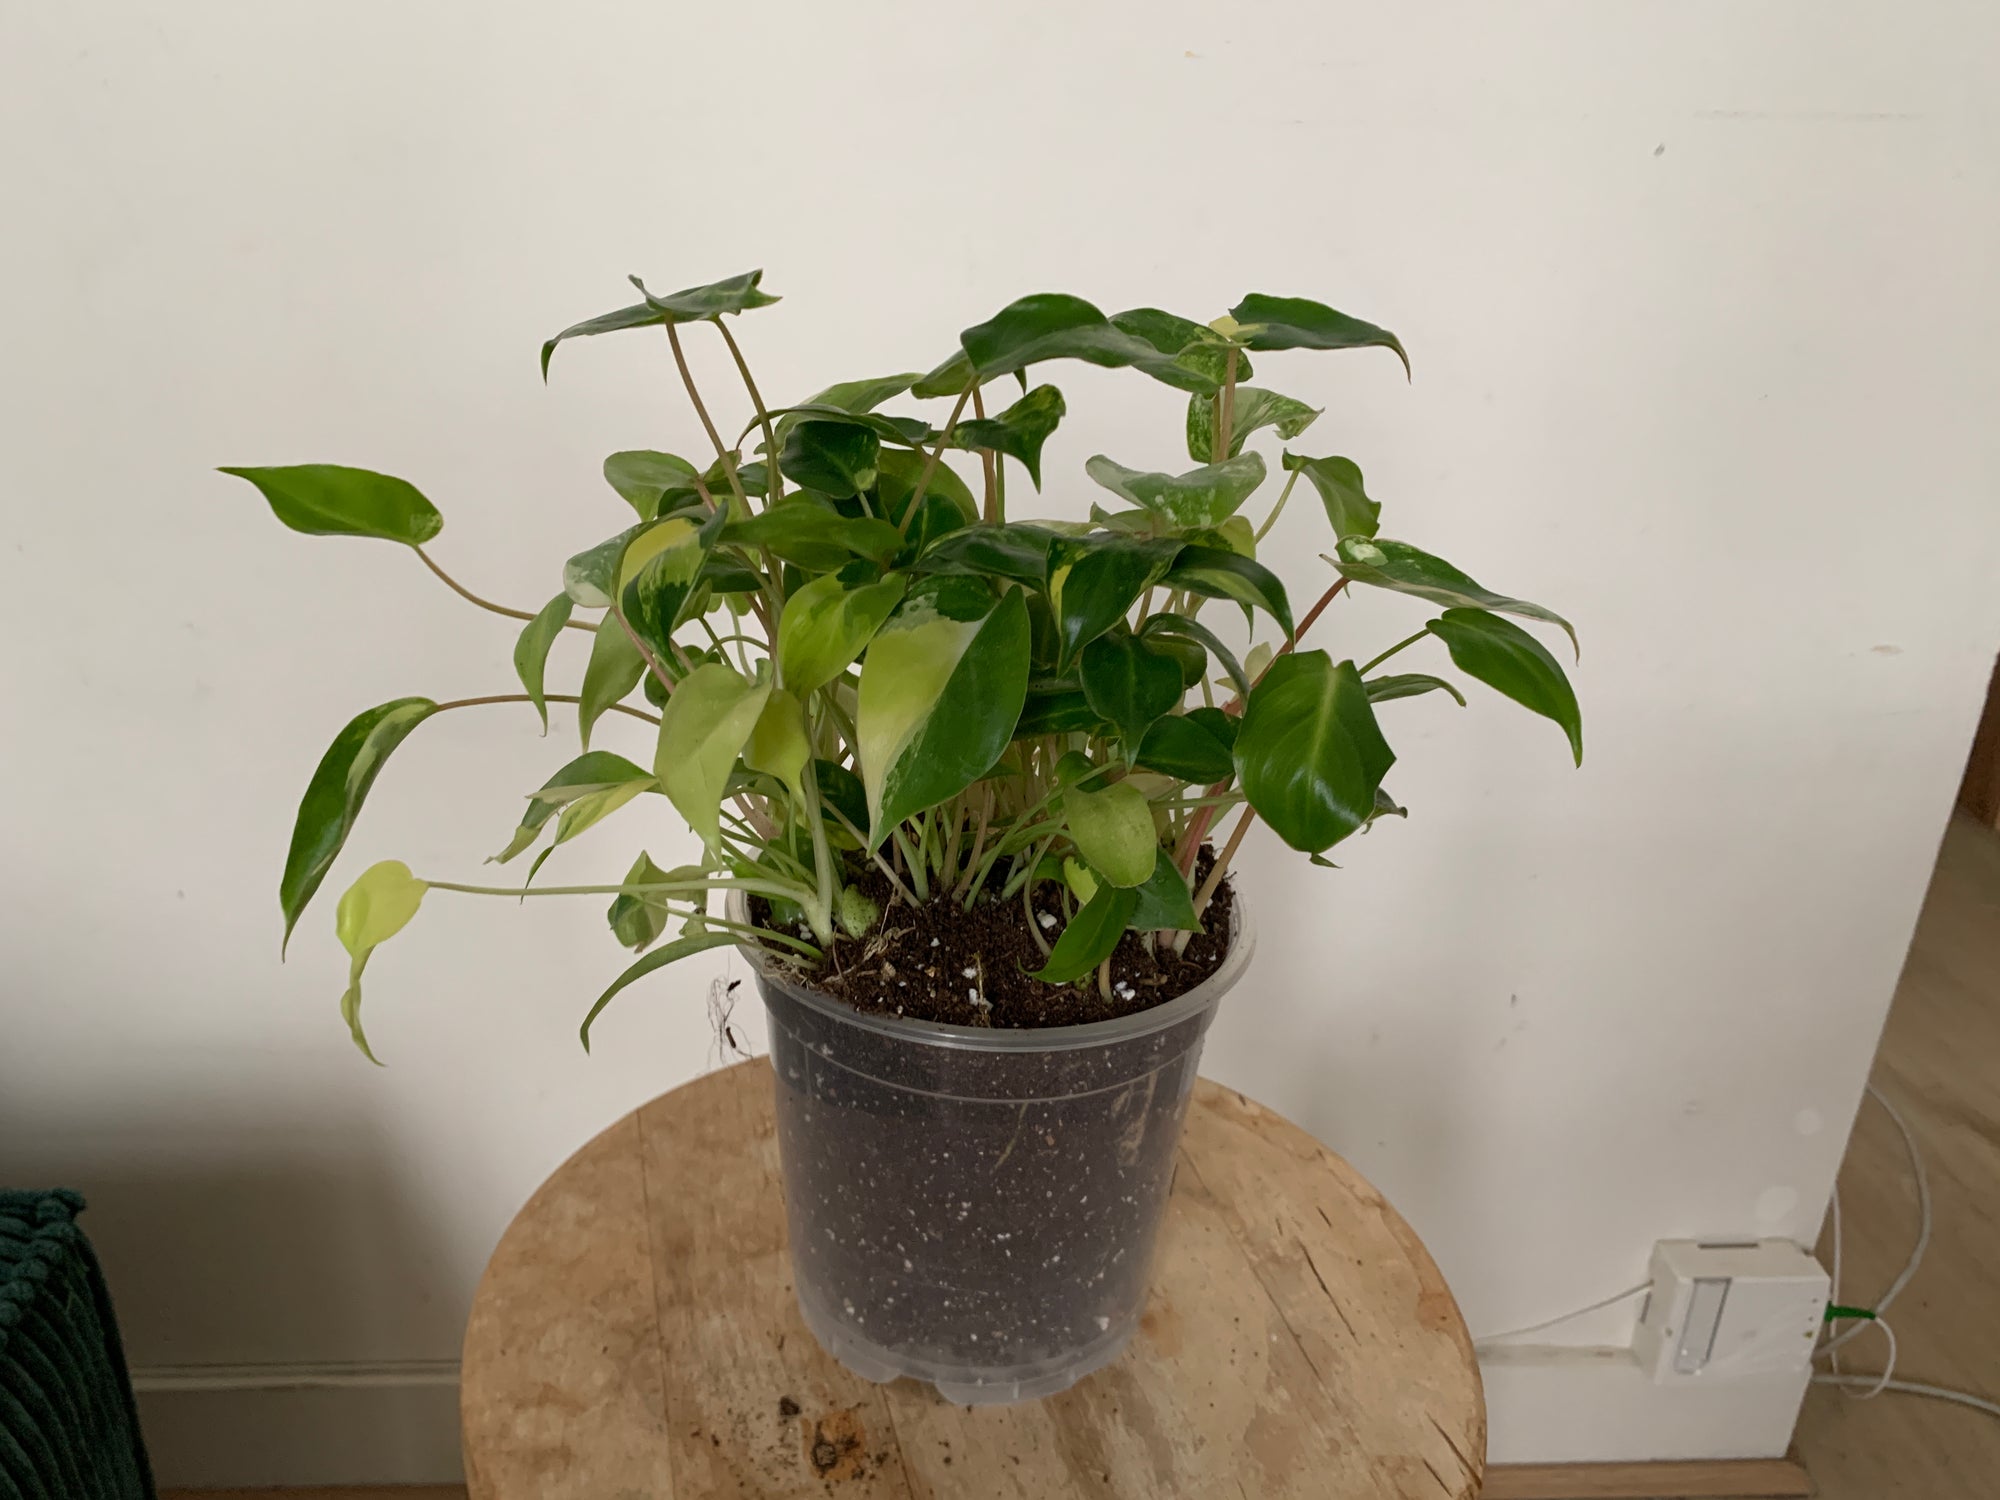 10 boutures de Philodendron Burle marx variegata dans un pot de 15cm